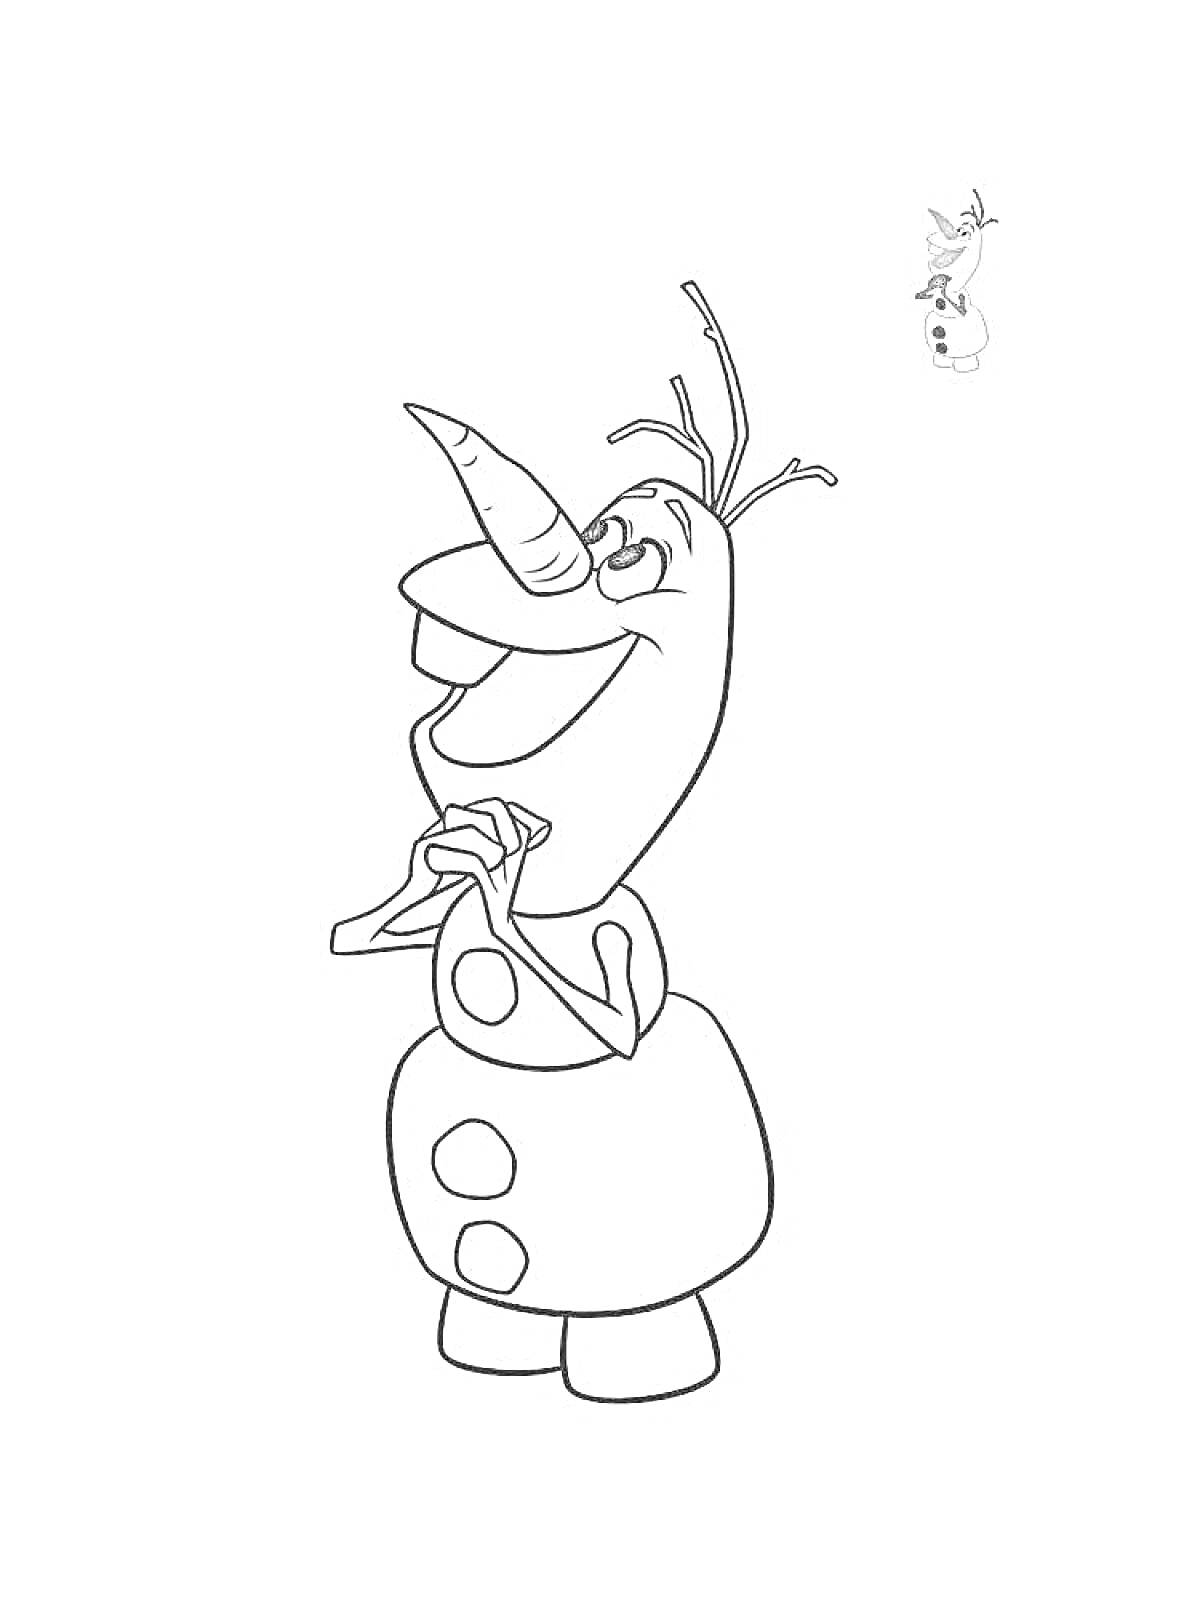 Раскраска Олаф снеговик из мультфильма, стоящий со сложенными руками, улыбка, нос-морковка, кнопки, ветки на голове